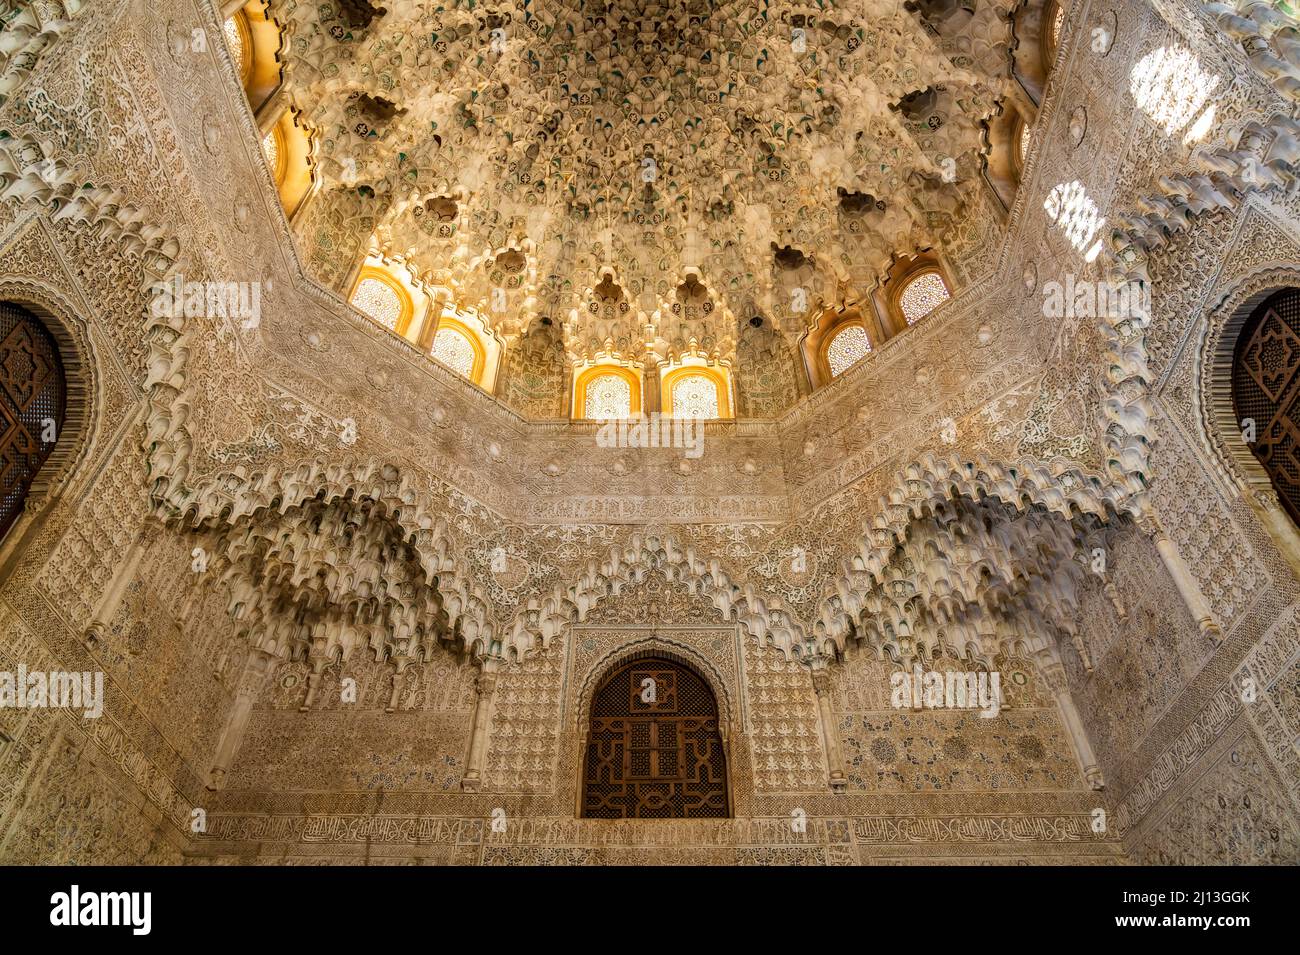 Innenraum der Nasridenpaläste, Welterbe Alhambra a Granada, Andalusia, Spanien | palazzi Nasrid interni, patrimonio mondiale dell'Alhambra a Granada, Anda Foto Stock